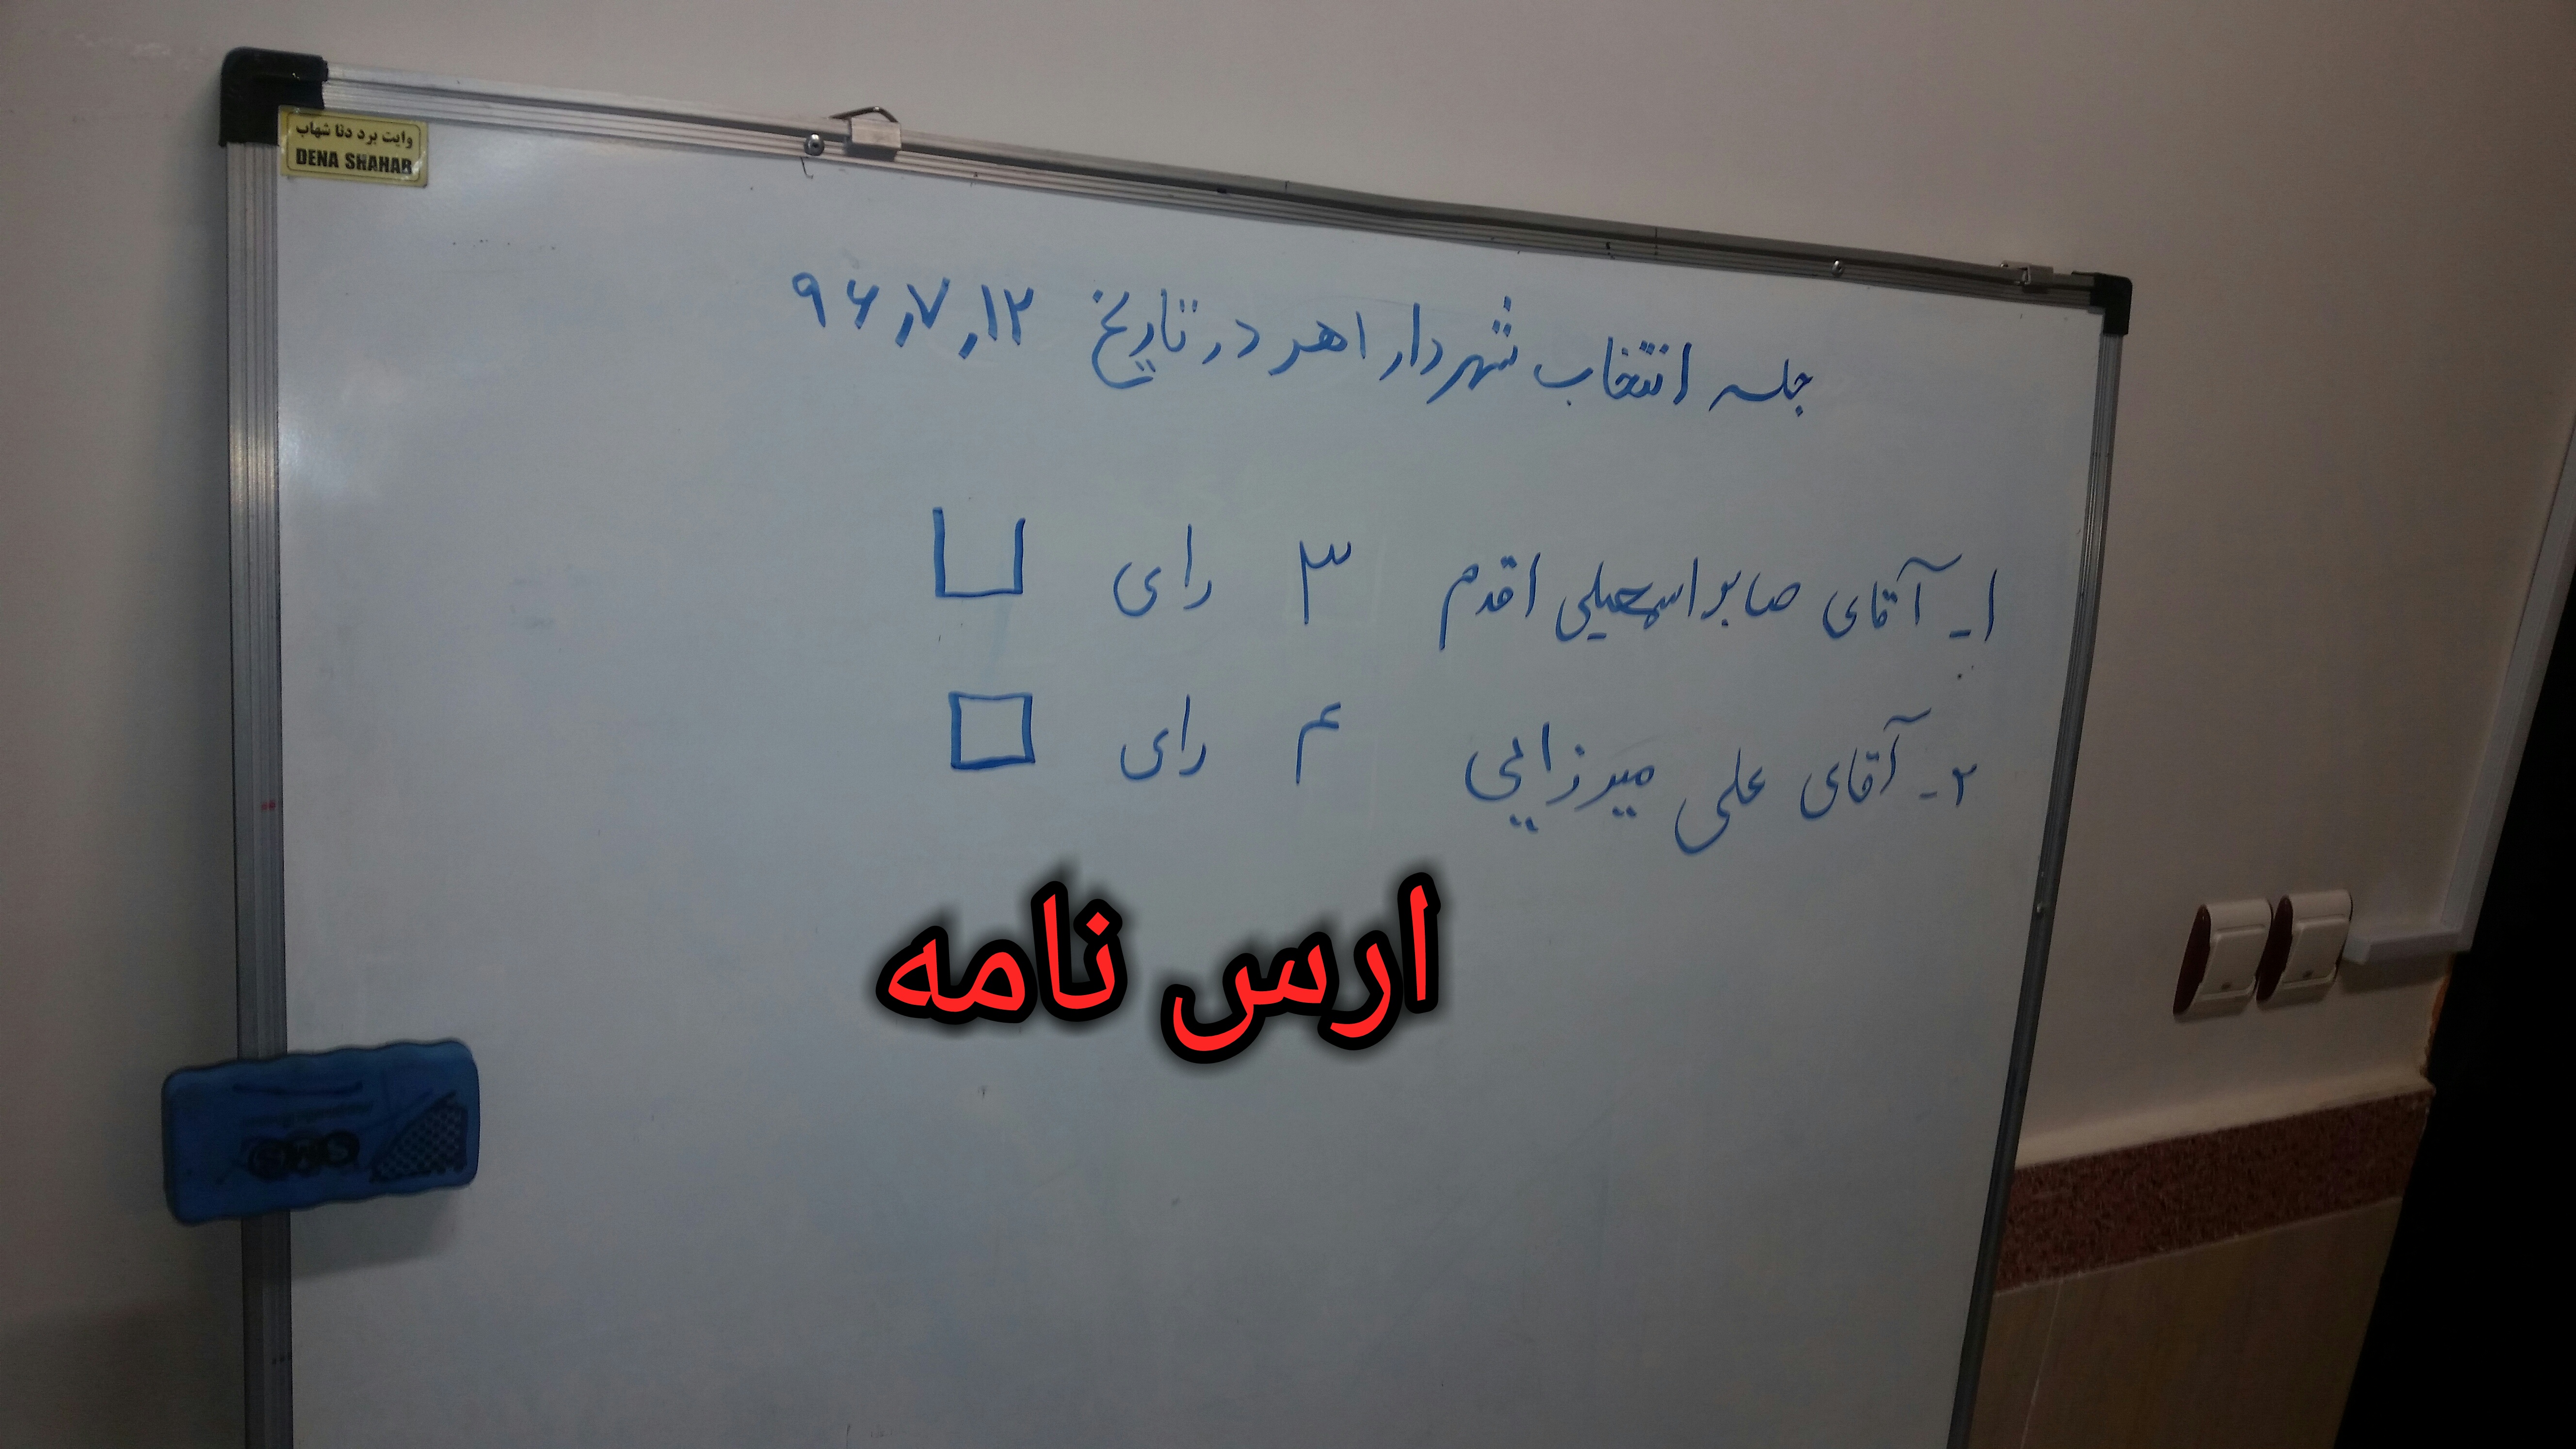 علی میرزایی بعنوان شهردار اهر انتخاب شد